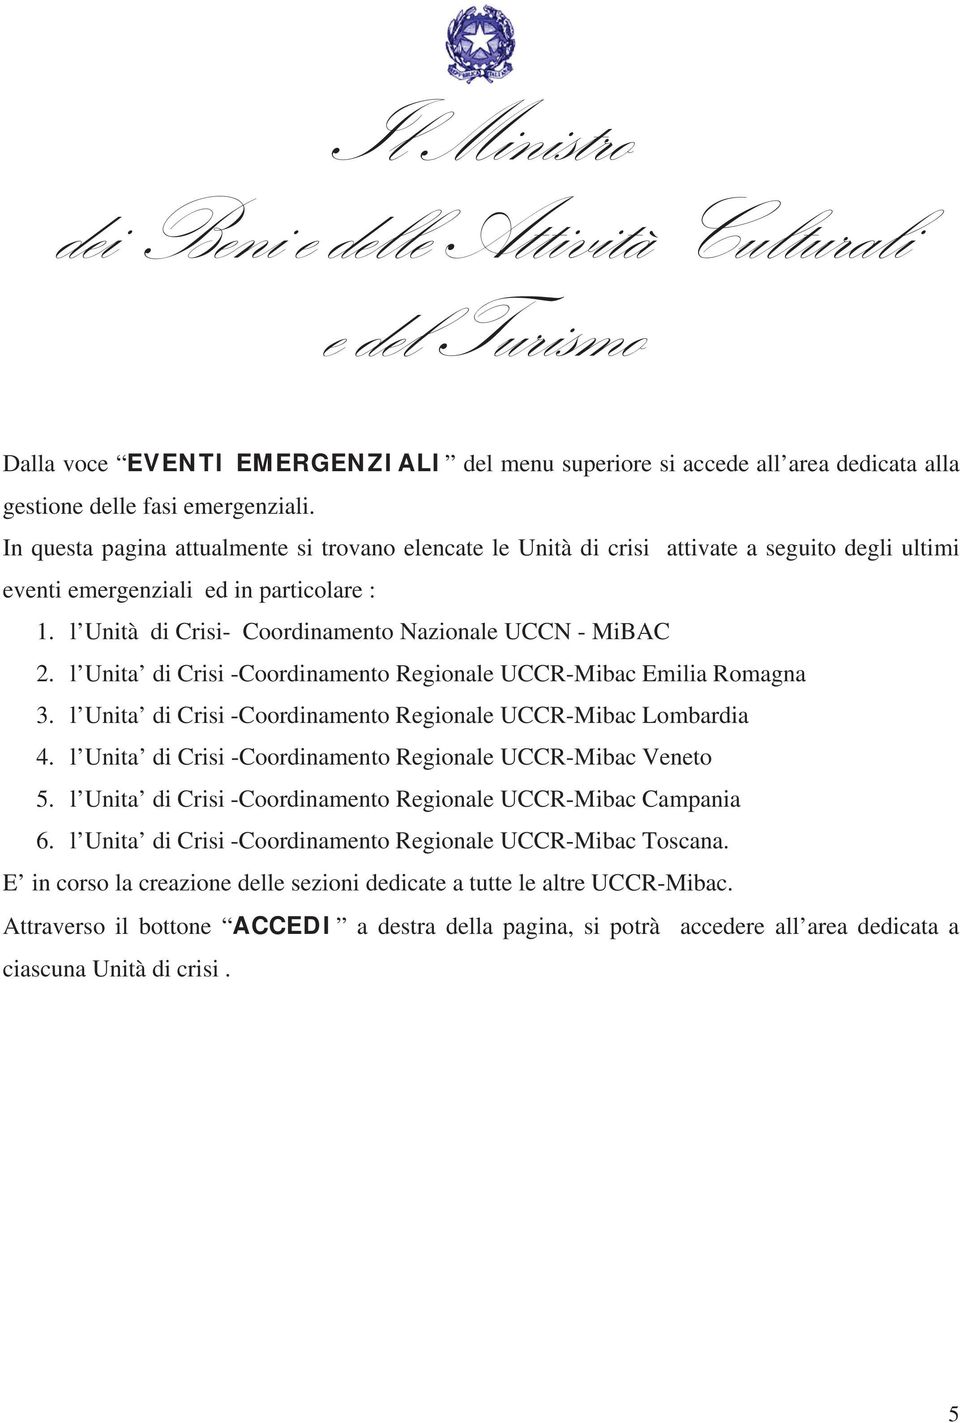 l Unita di Crisi -Coordinamento Regionale UCCR-Mibac Emilia Romagna 3. l Unita di Crisi -Coordinamento Regionale UCCR-Mibac Lombardia 4. l Unita di Crisi -Coordinamento Regionale UCCR-Mibac Veneto 5.